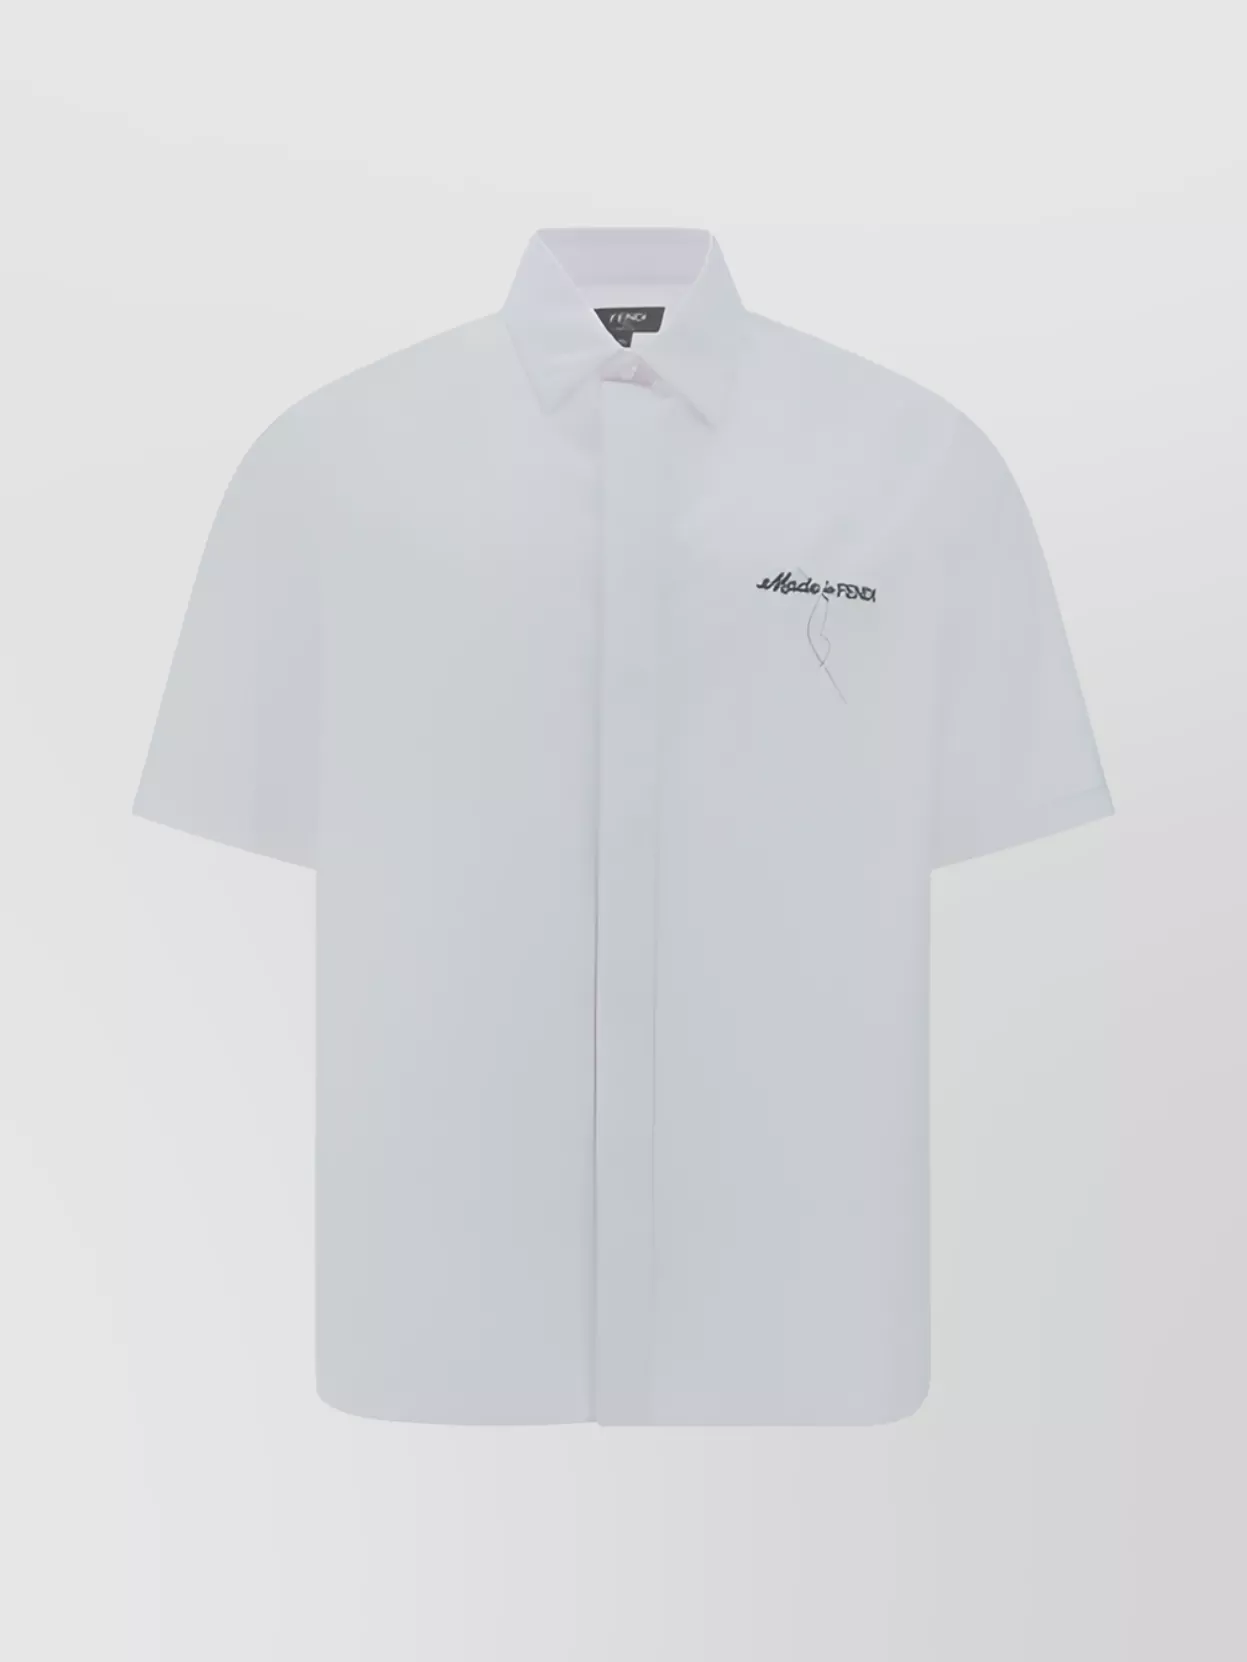 Fendi Collared Shirt Monochrome Pattern